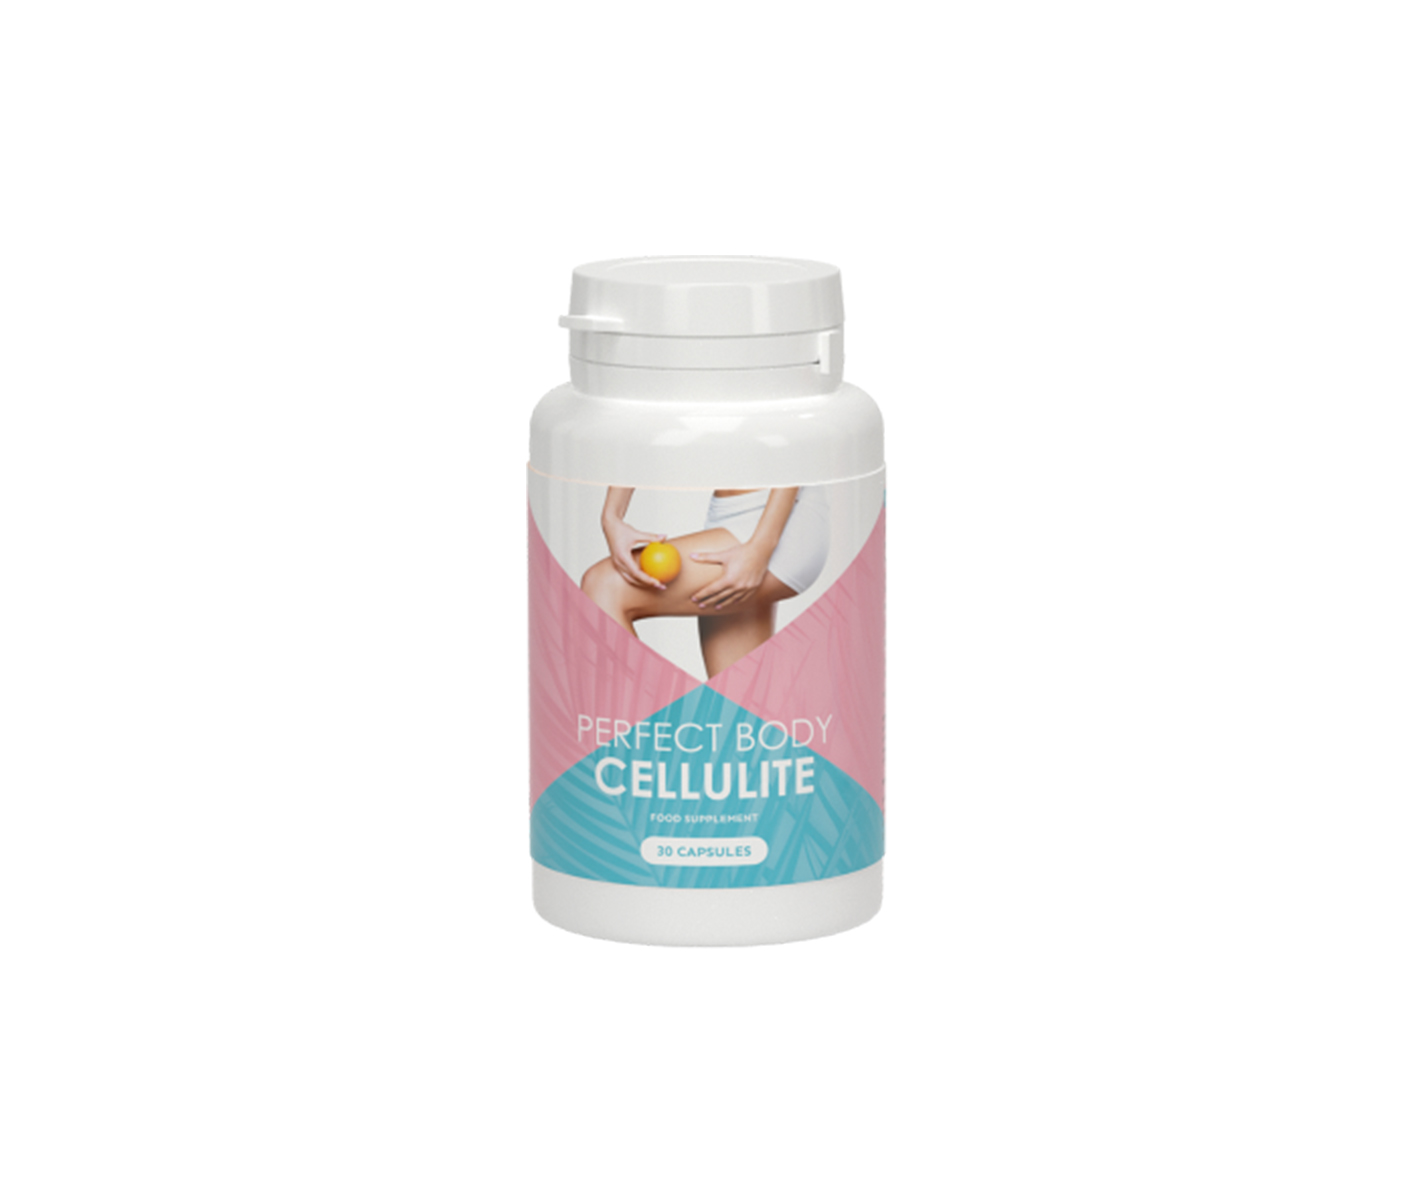 Perfect Body Cellulite, ein Nahrungsergänzungsmittel gegen Cellulite